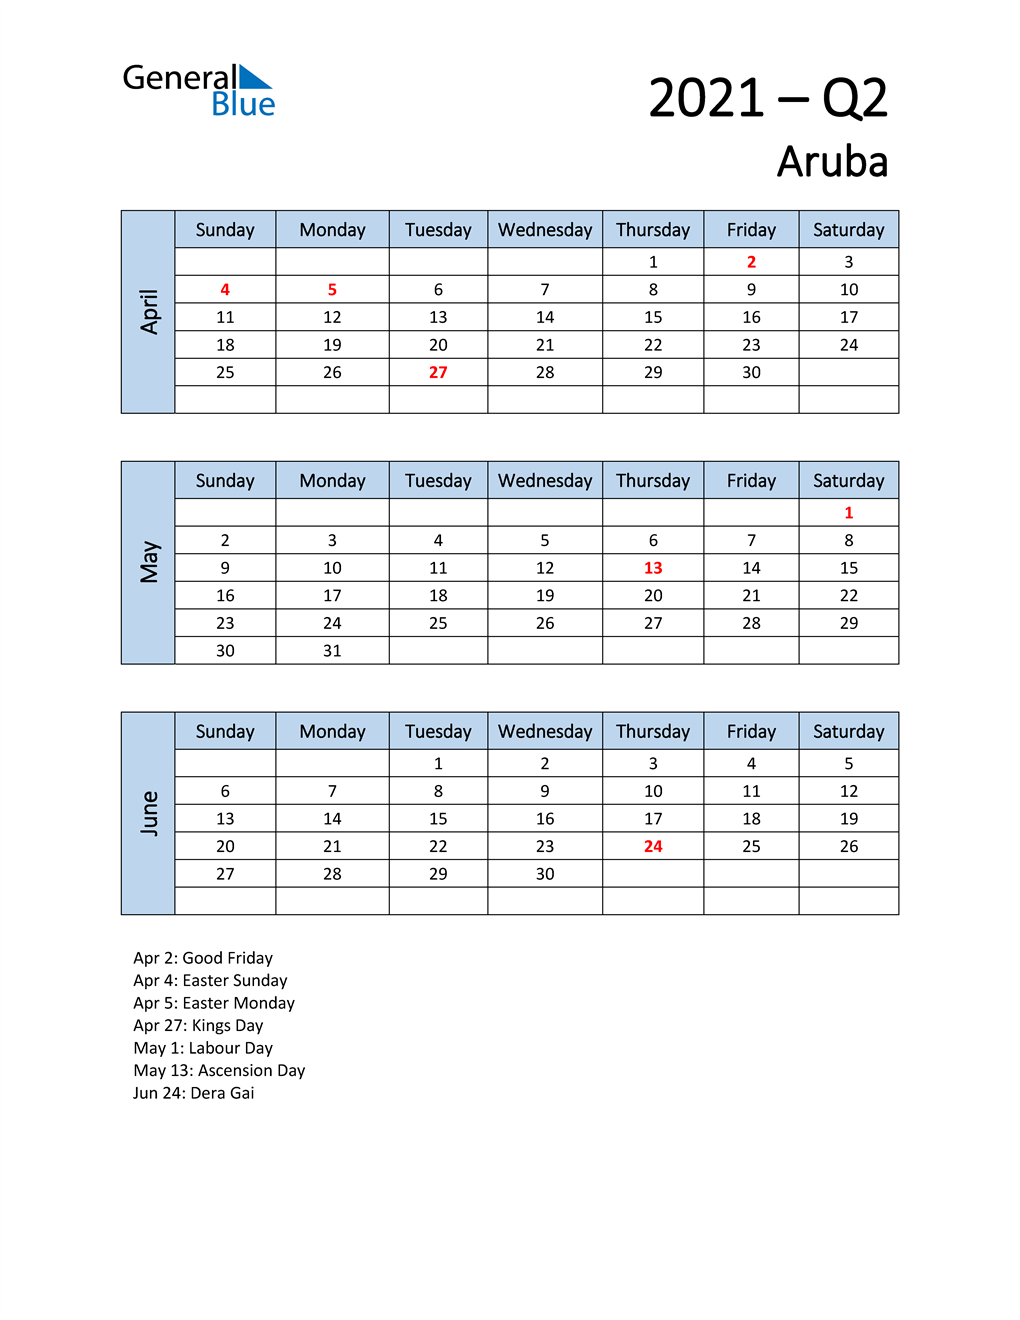  Free Q2 2021 Calendar for Aruba